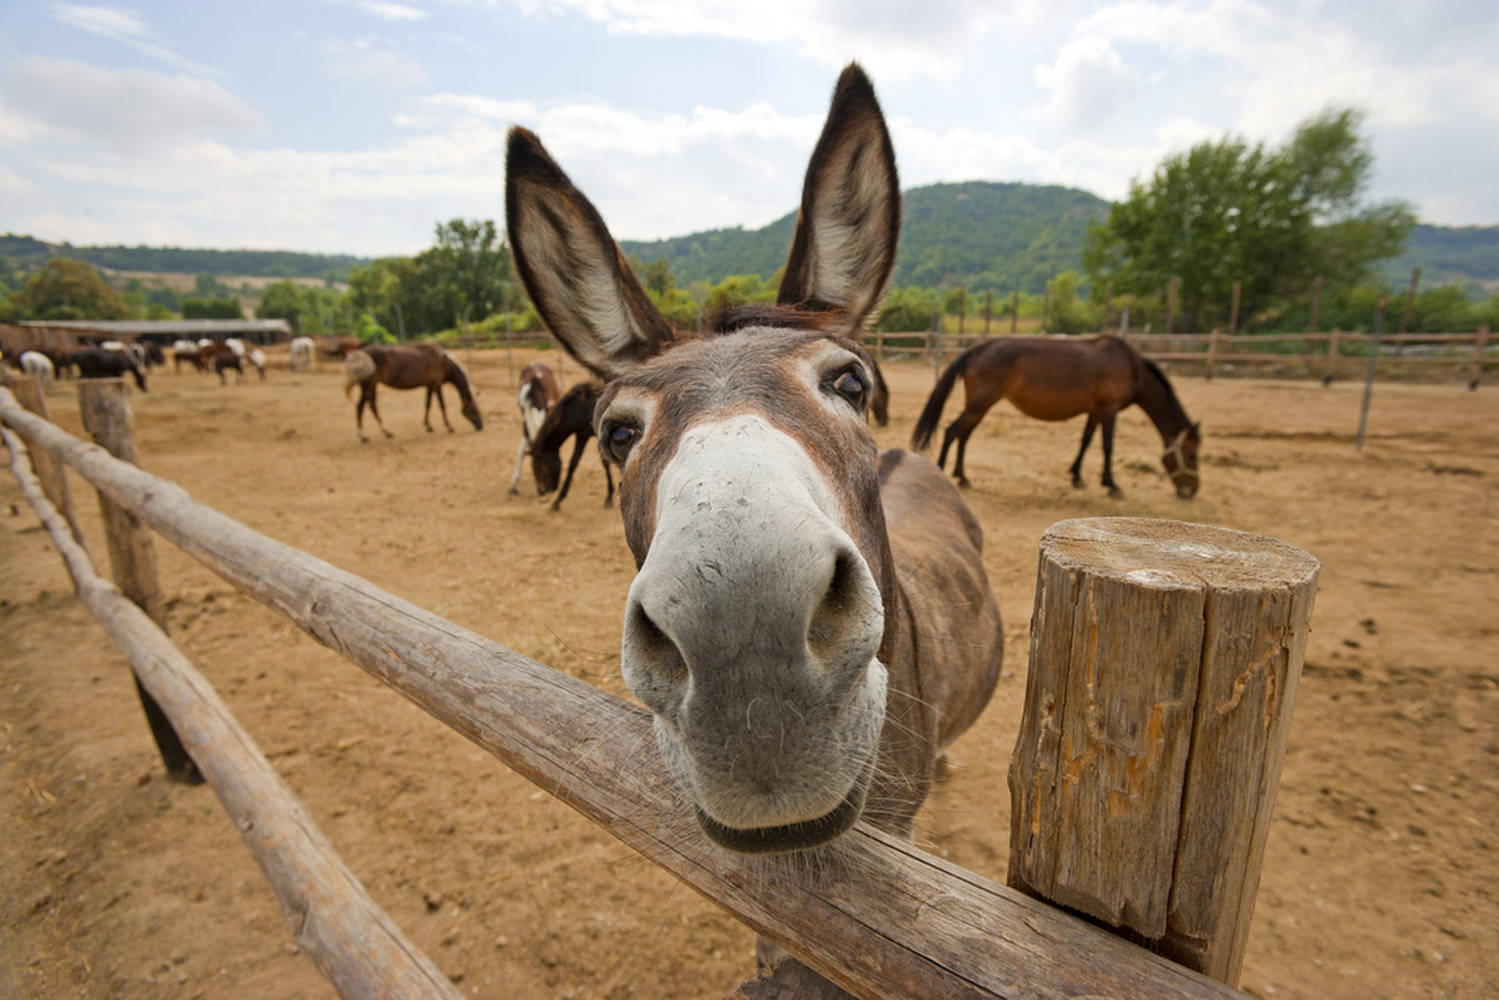 Big Donkey Nose